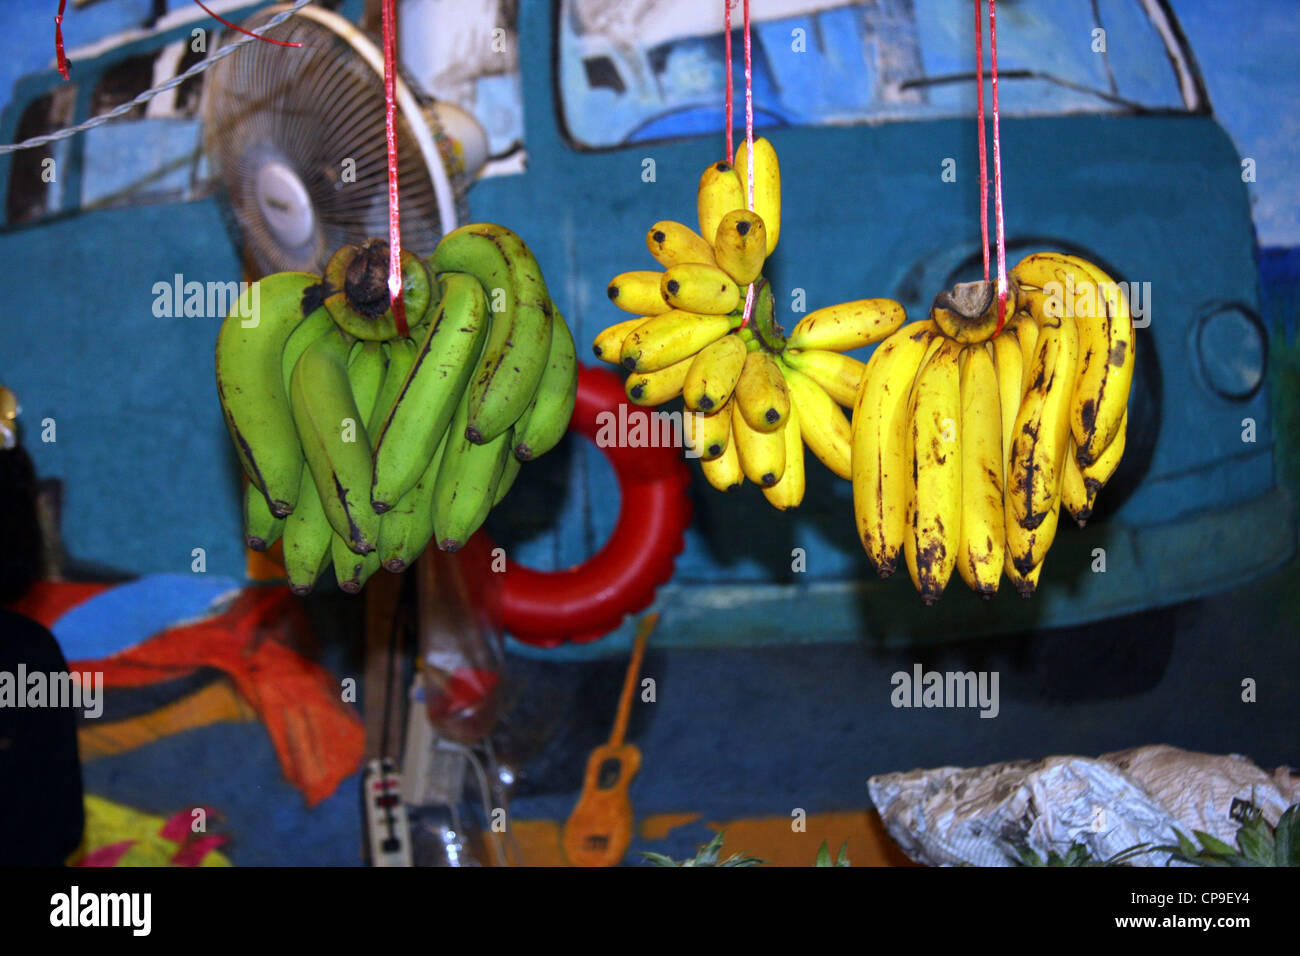 Trauben von Bananen Aufhängen in Outdoor-Gemüsehändler in Phuket, Thailand  Stockfotografie - Alamy